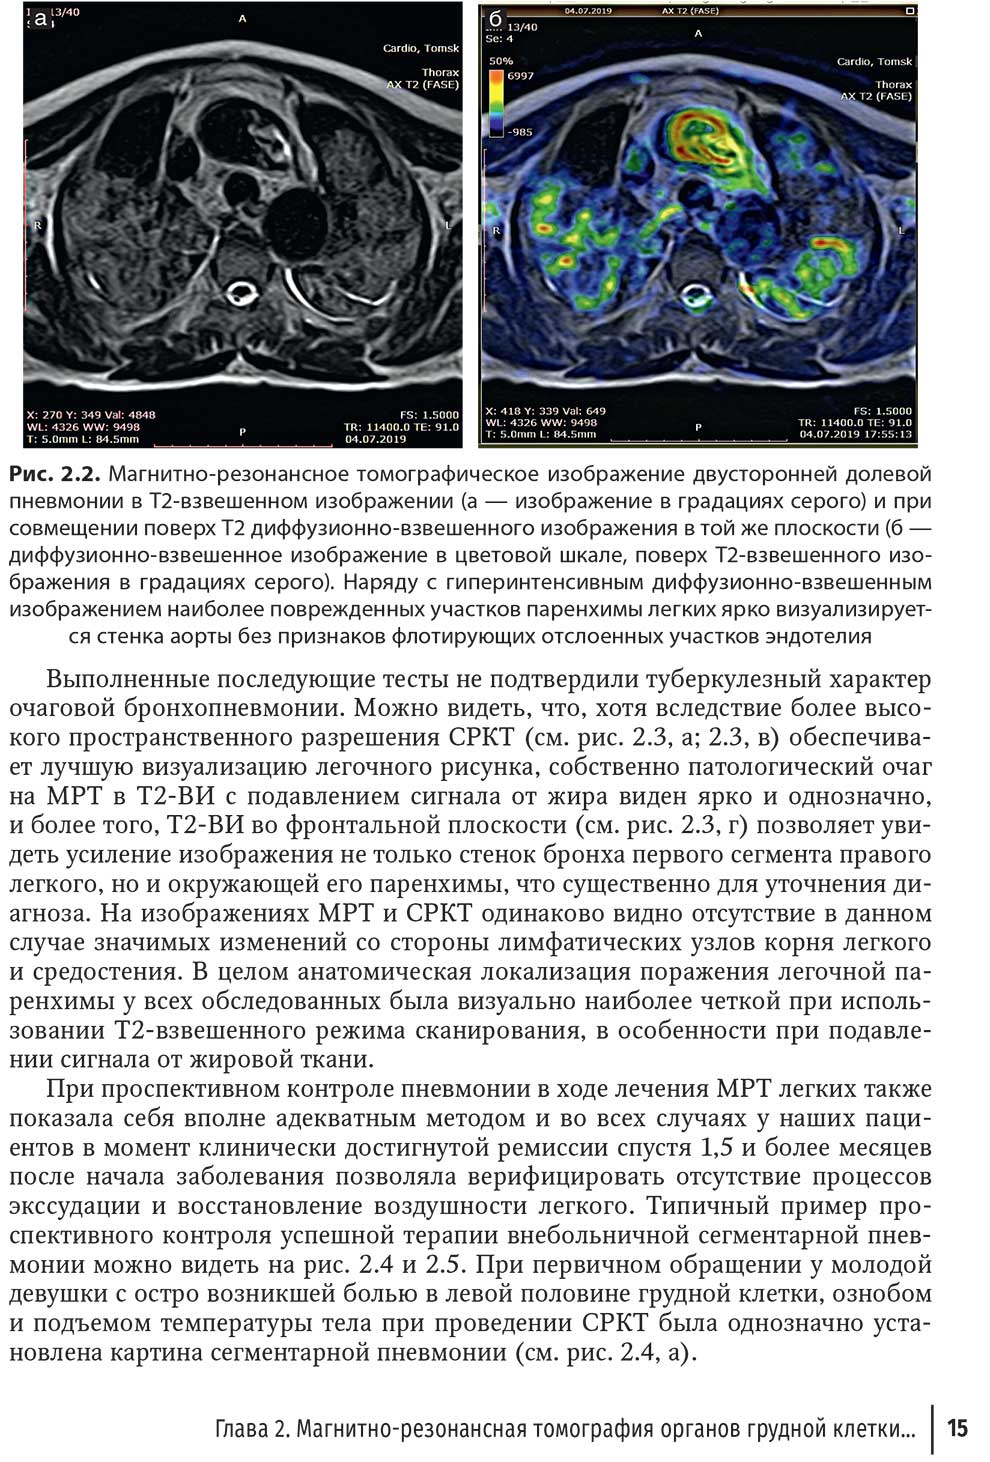 Рис. 2.2. Магнитно-резонансное томографическое изображение двусторонней долевой пневмонии в Т2-взвешенном изображении 